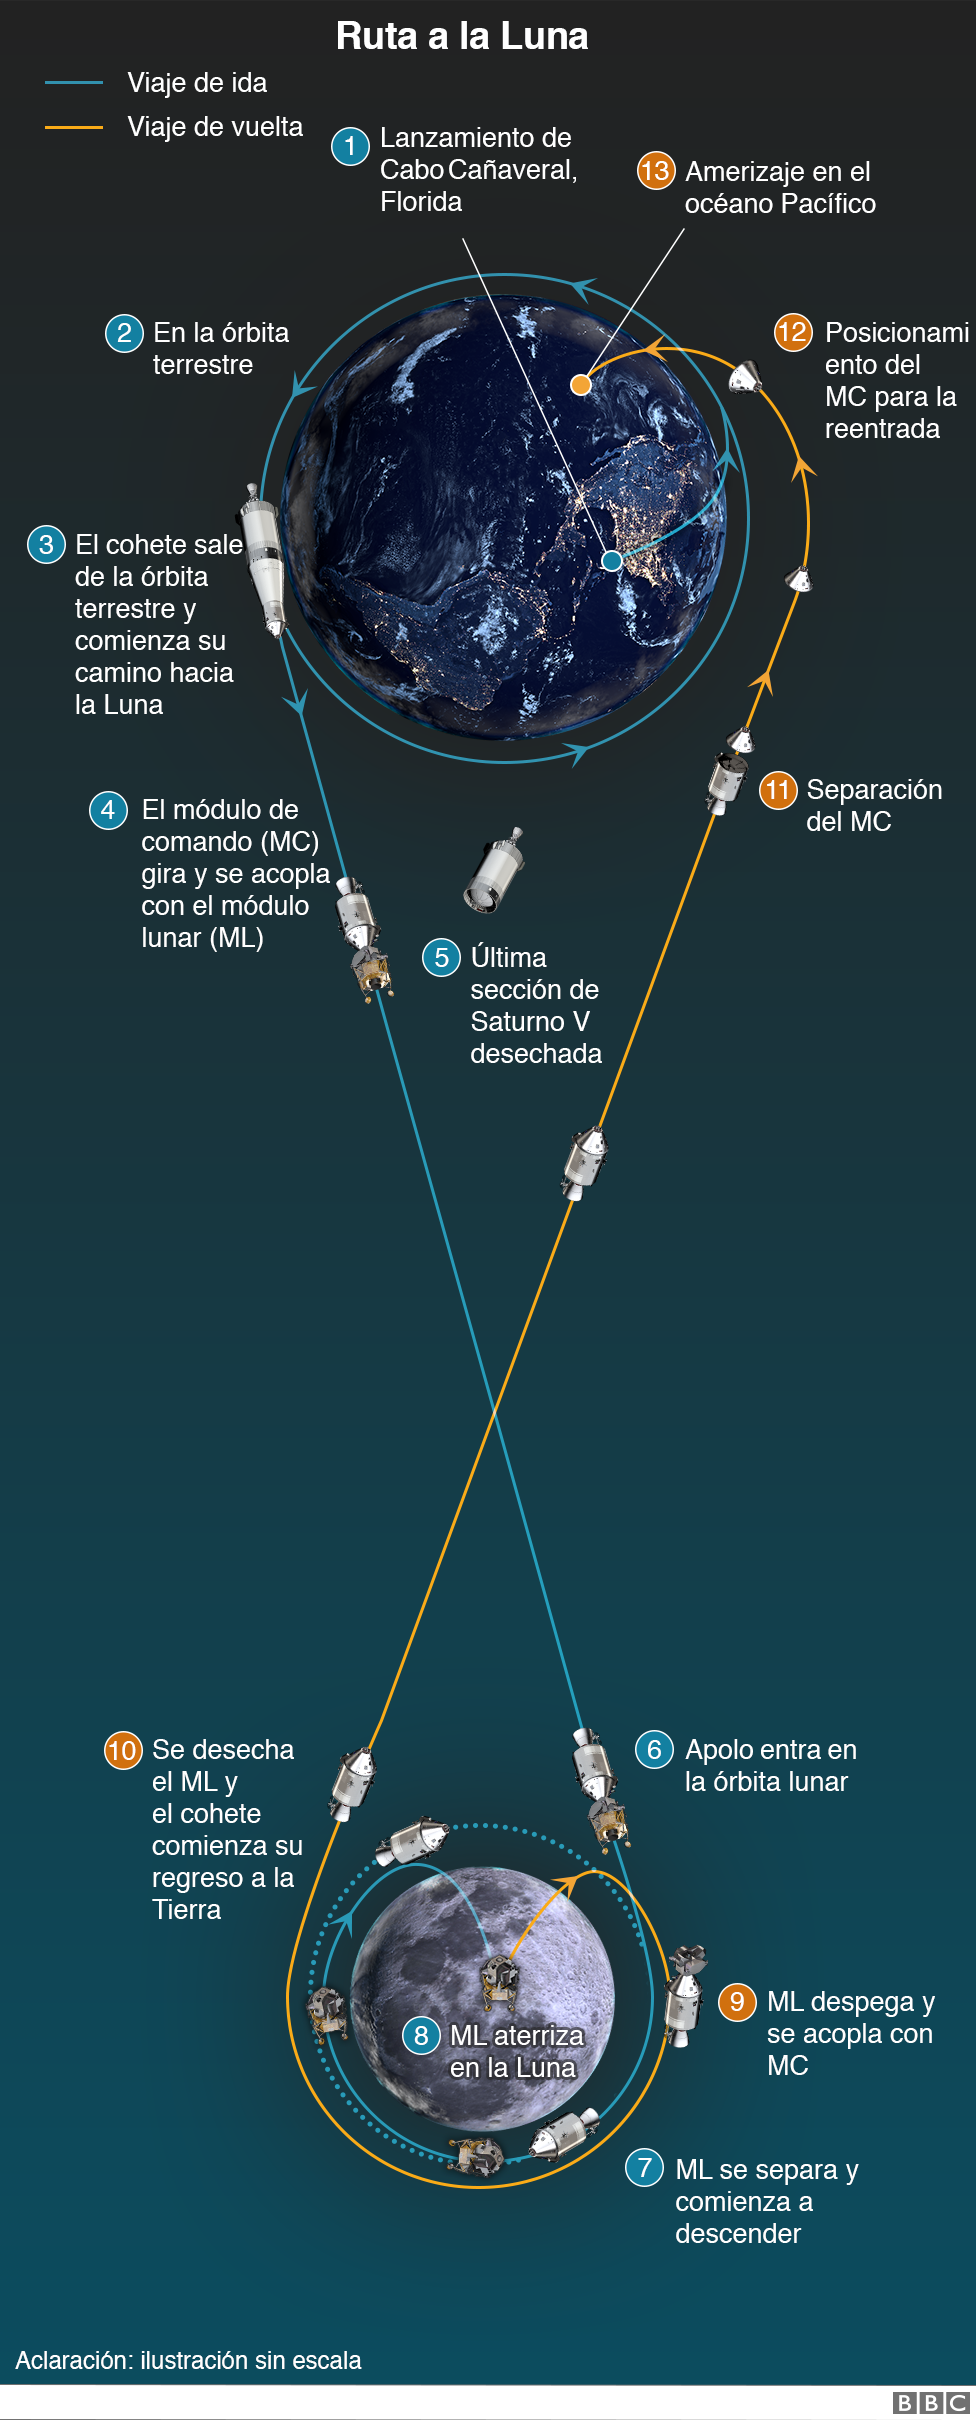 Gráfico del viaje a la Luna del Apolo 11.